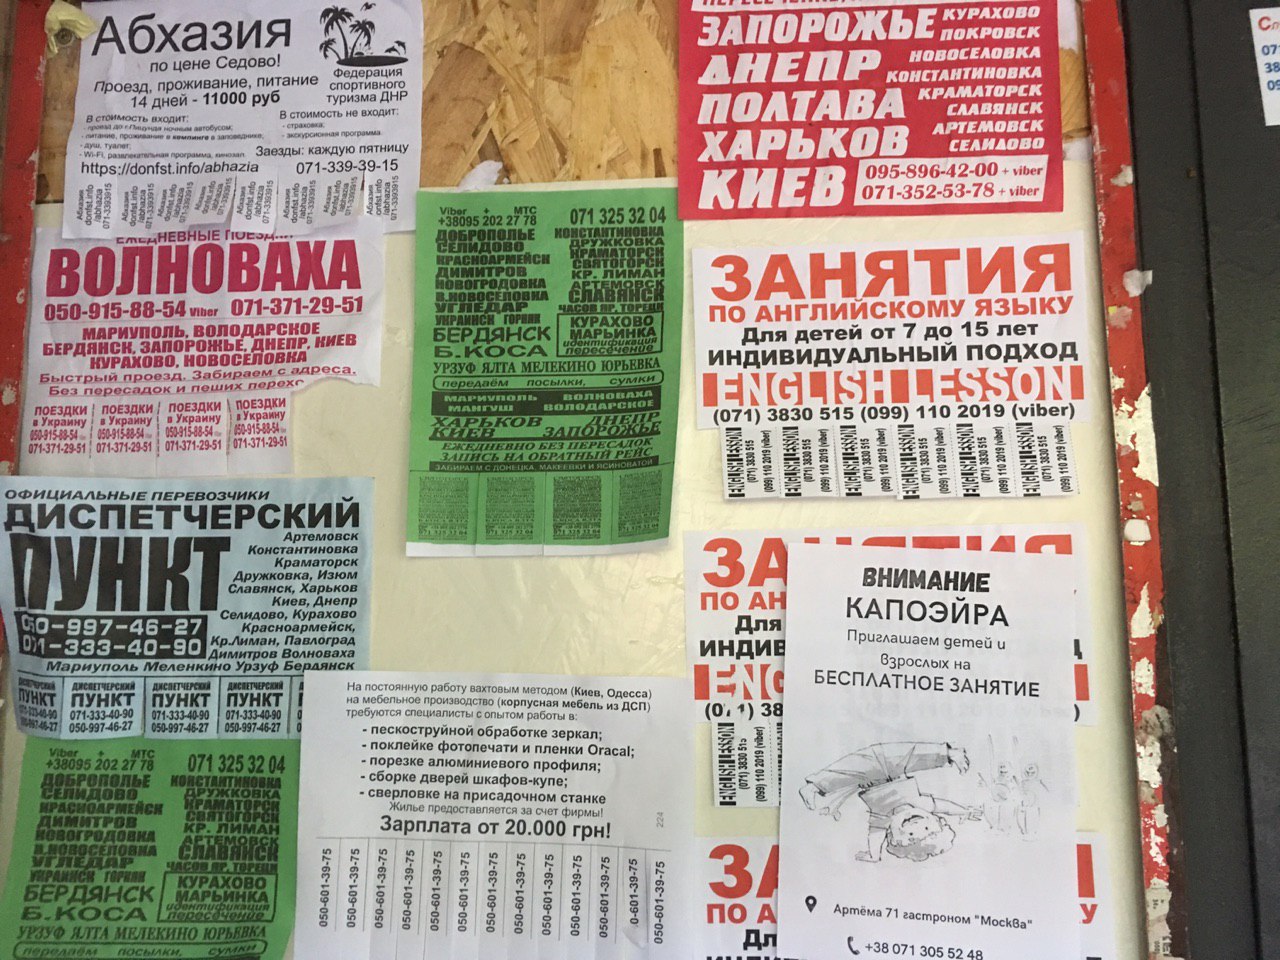 Объявления о дополнительном обучении в Донецке, август 2019 года. Фото Spektr.Press